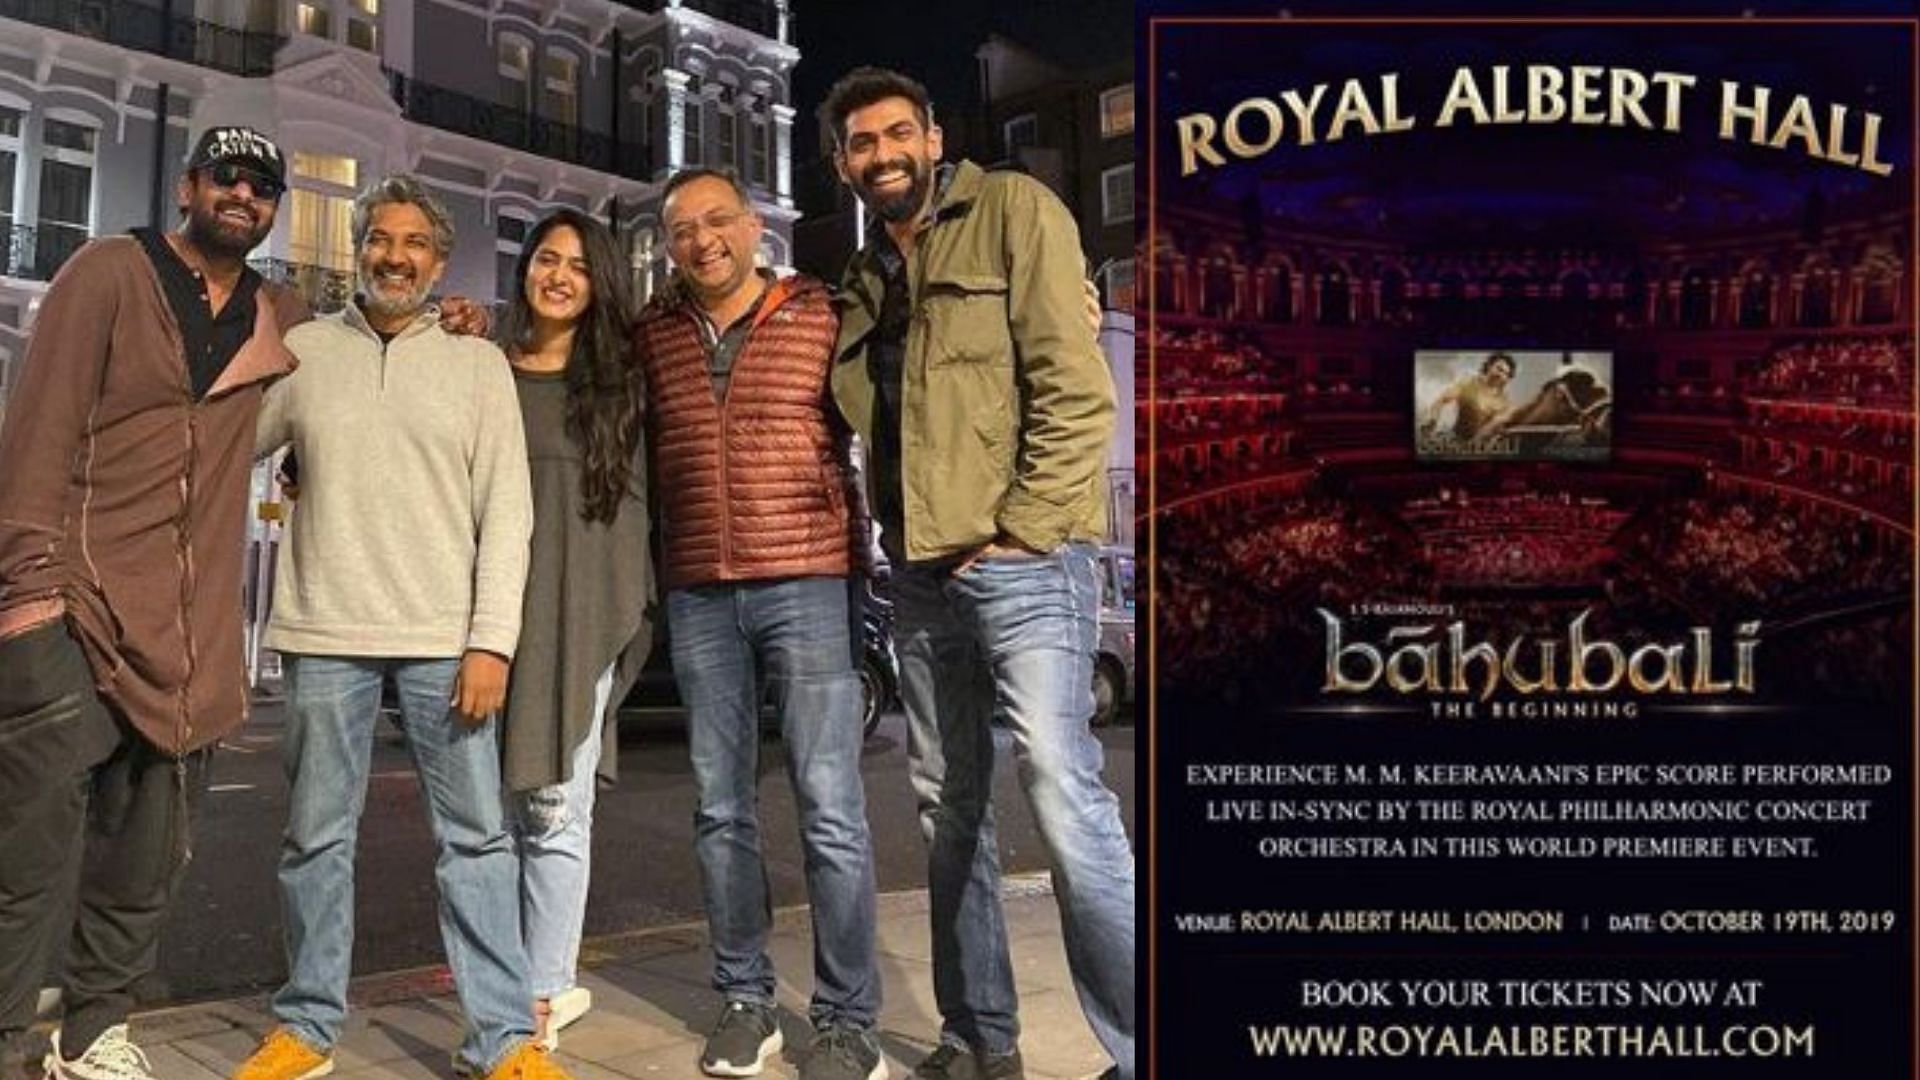 Baahubali makes history at Royal Albert Hall, London.